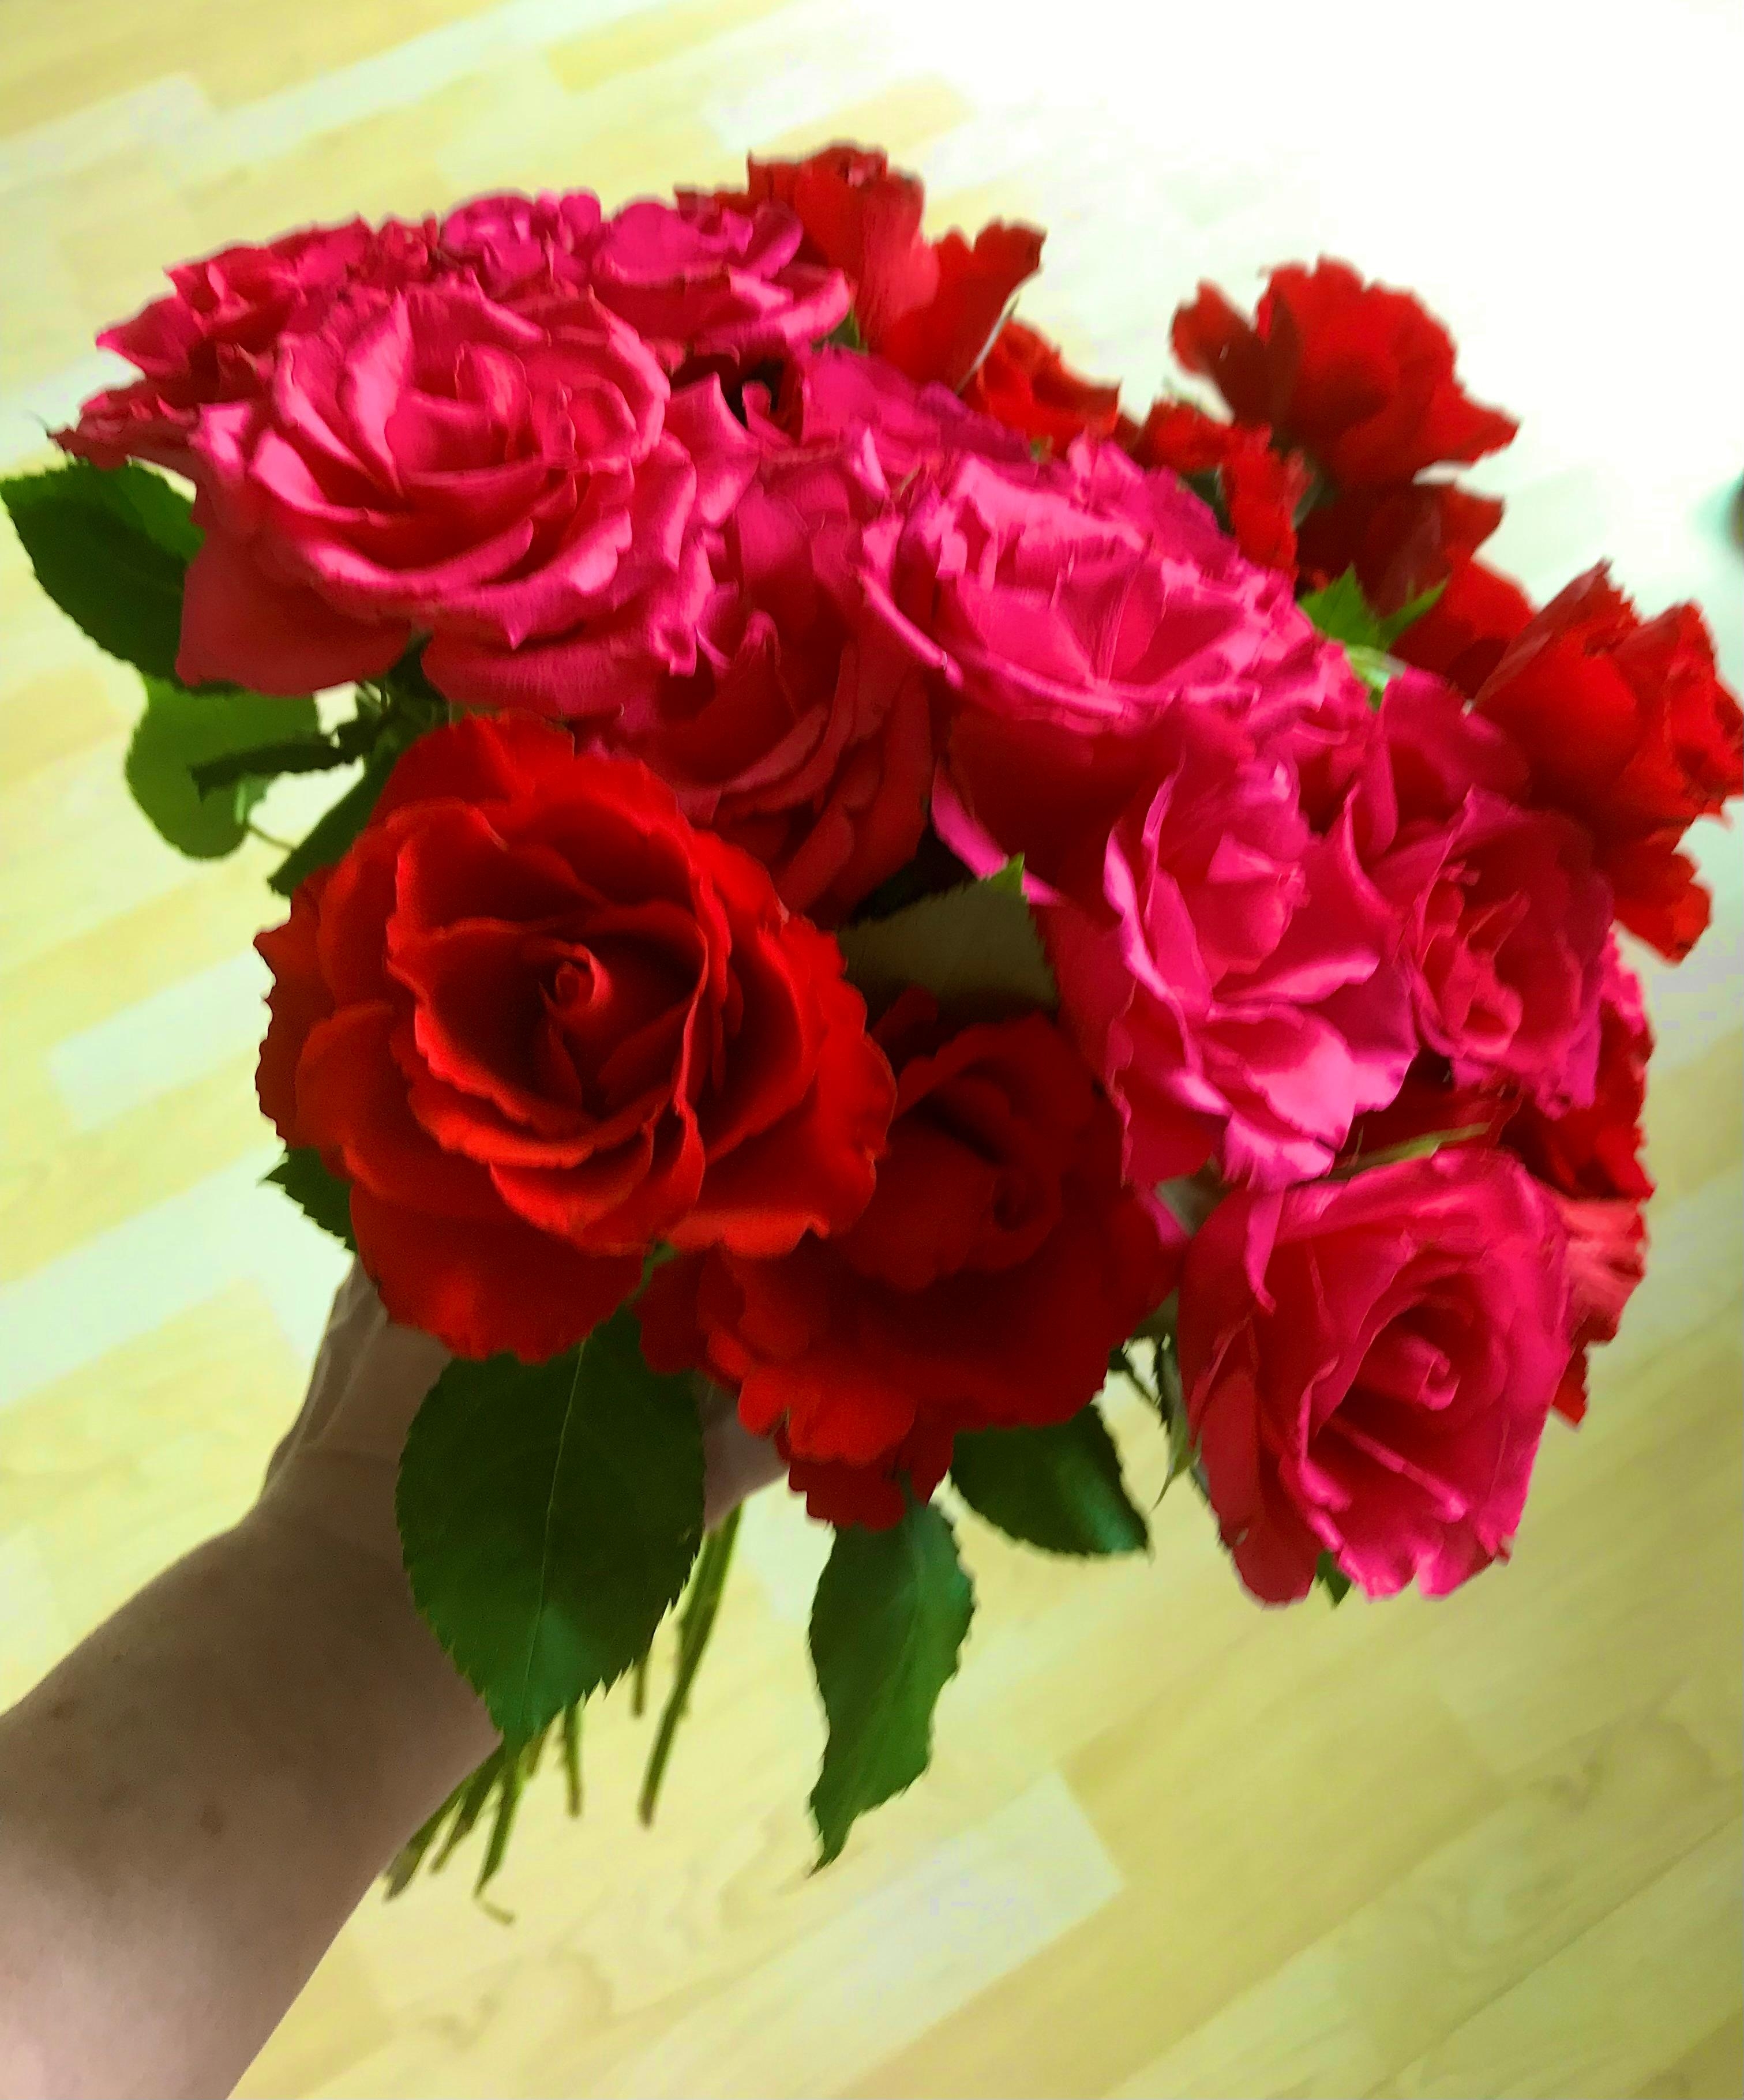 JUNI - Hochblüte der Rose 
#blumenliebe #rote #rose #geburtstag